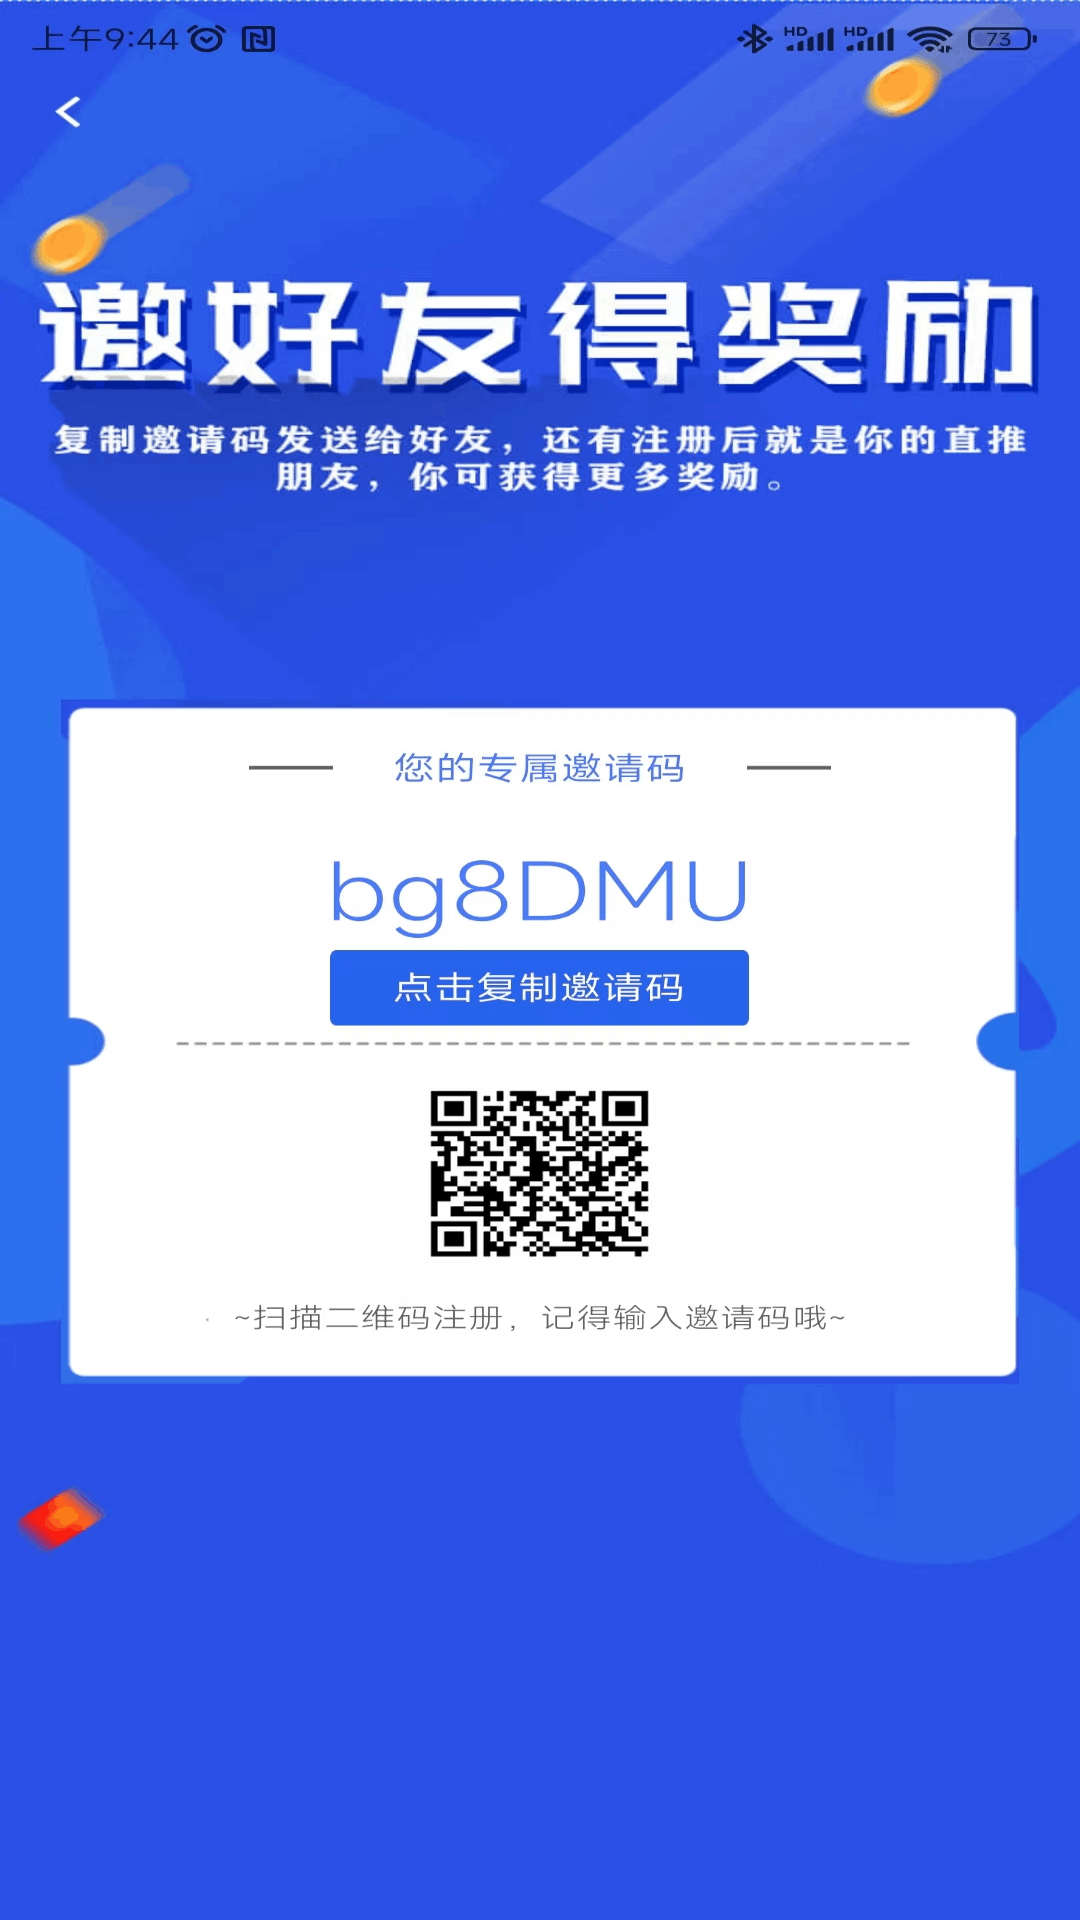 聚鑫极速新闻app下载,聚鑫极速新闻app官方版 v1.0.5